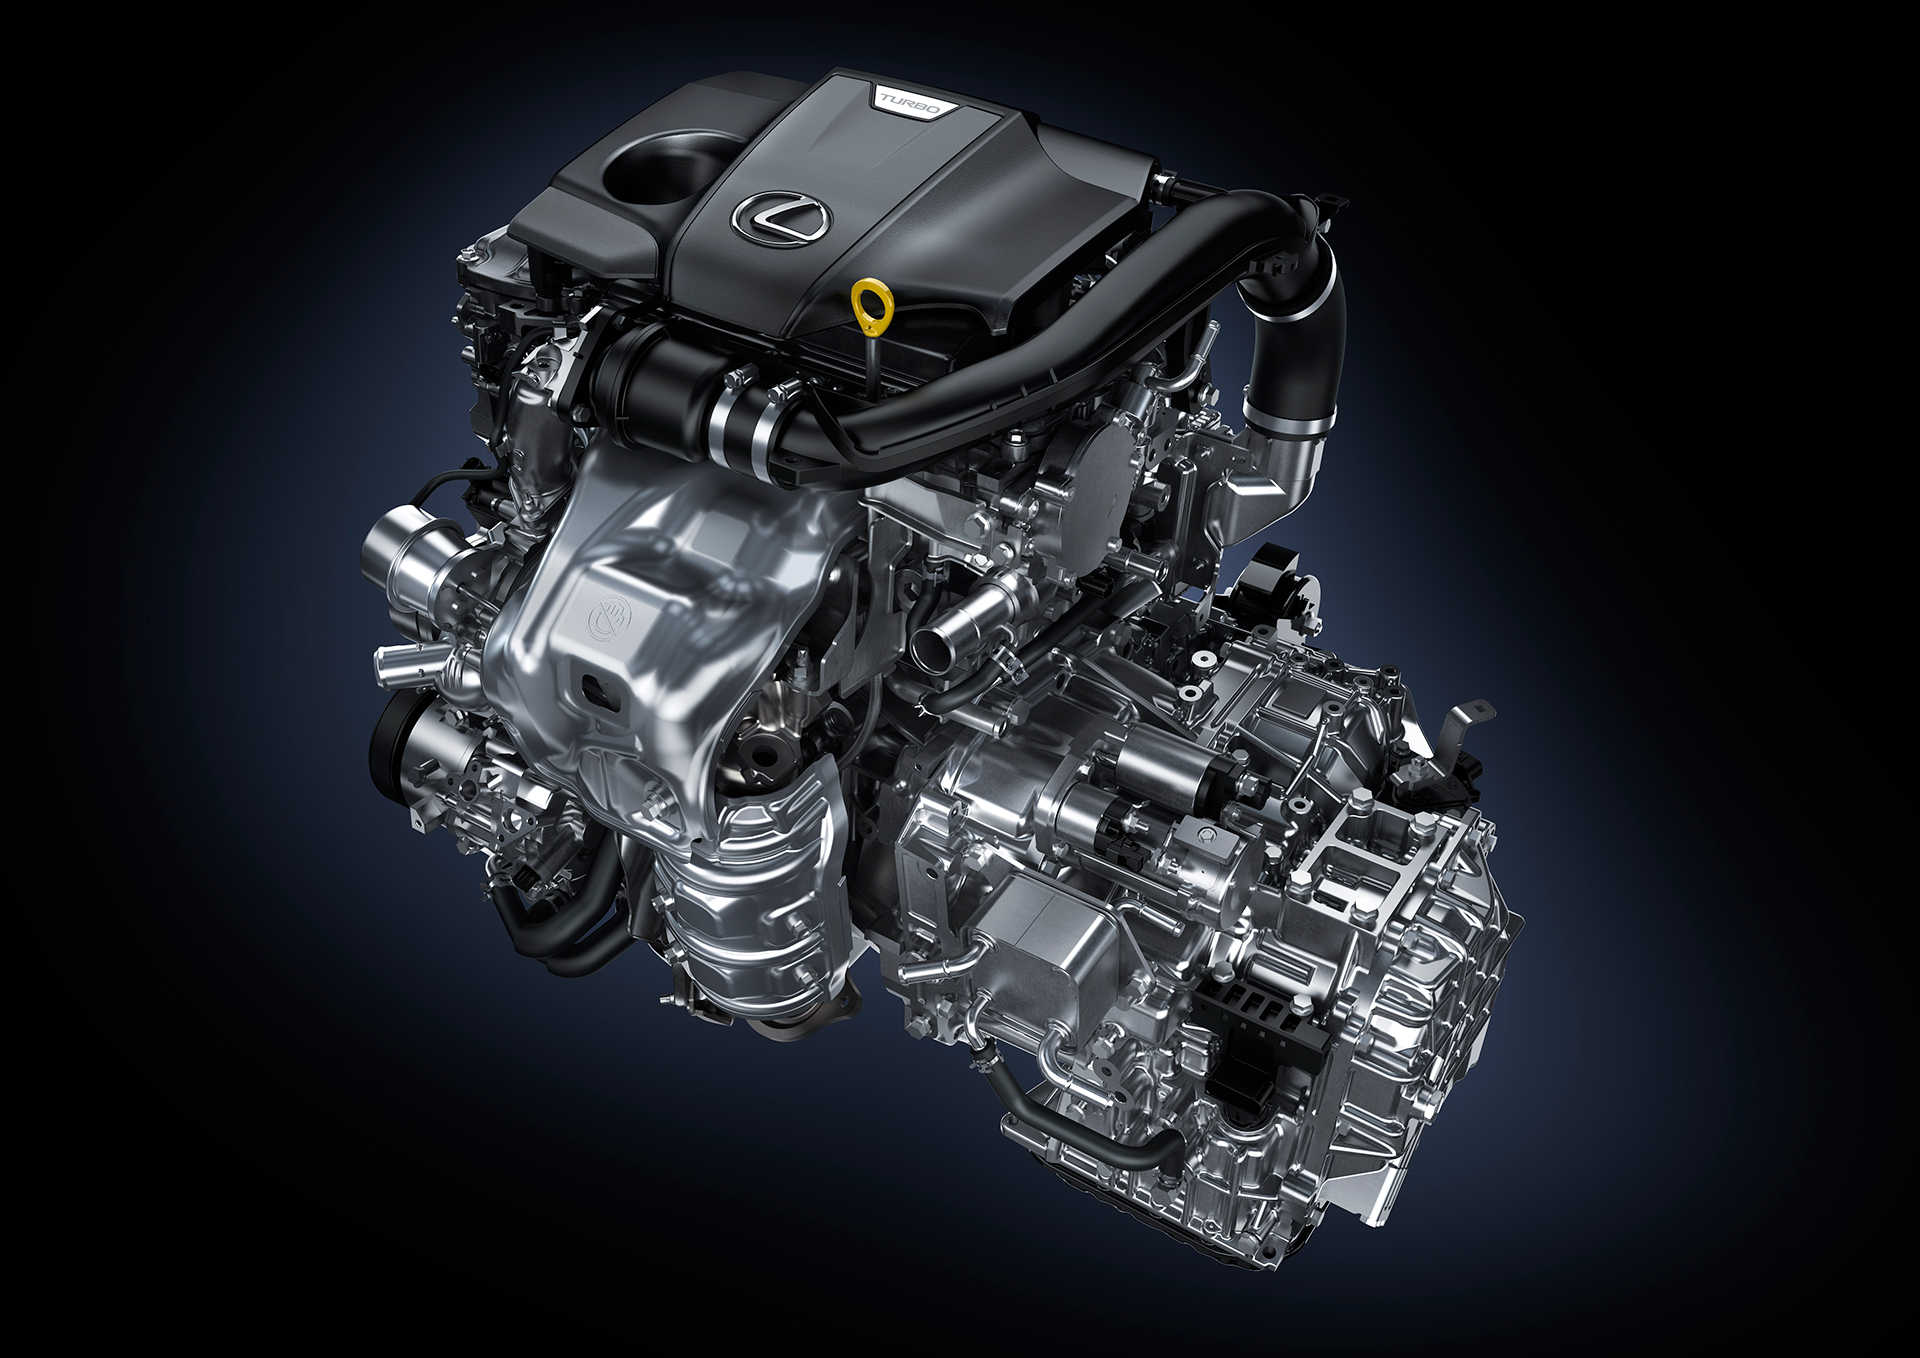 NX 200t: Turbo Engine